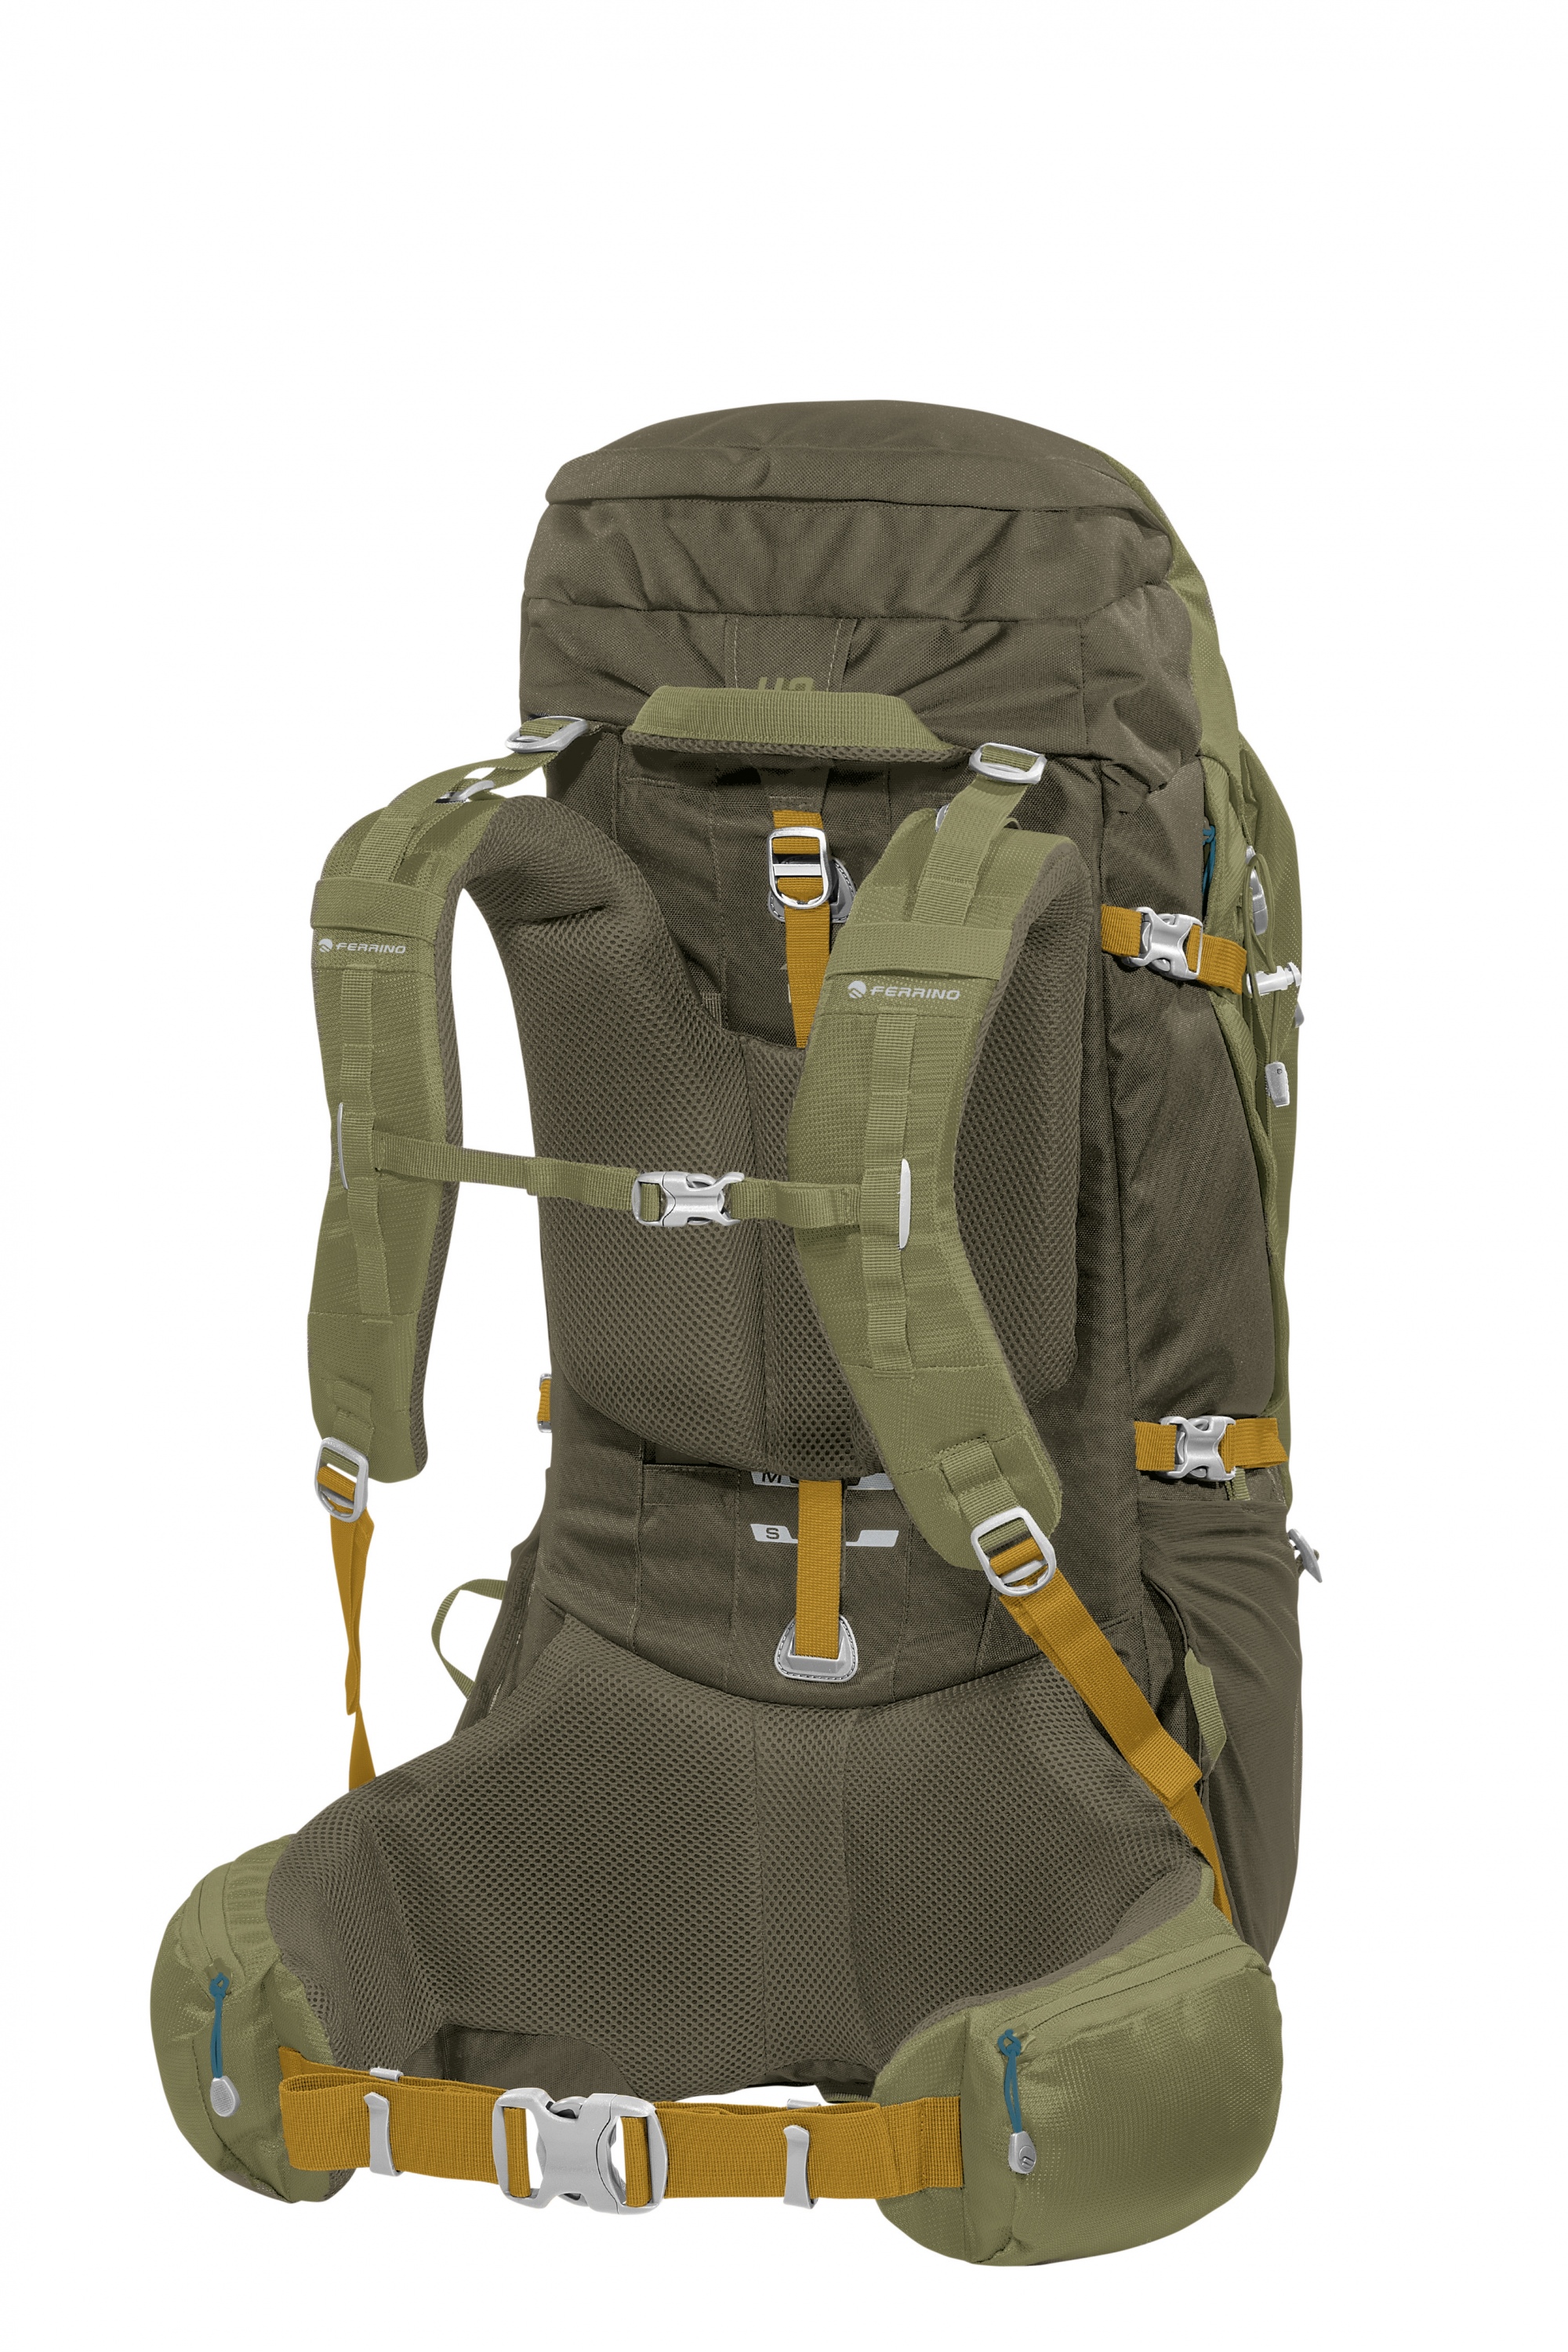 Ferrino Transalp 60 litri 75006 MDD colore antracite zaino ideale per trekking escursionismo hiking cammino di santiago scout capacità 60 litri tessuto supertex 60 